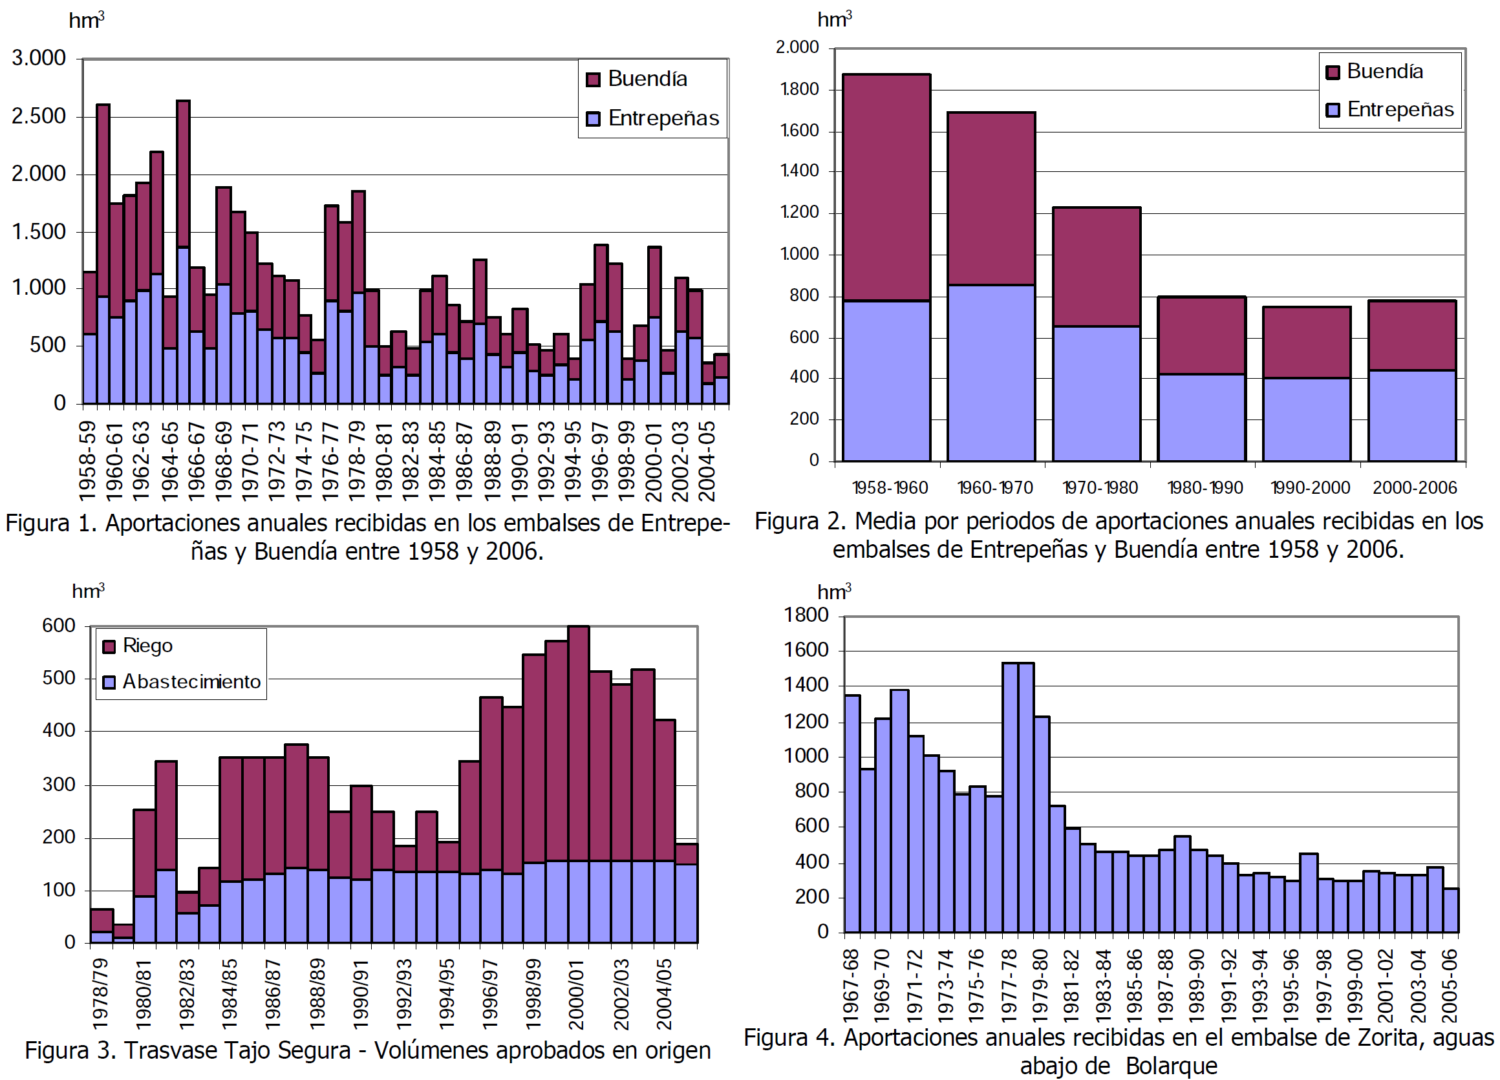 Evolución y tendencias en ENtrepeñas y Buendía. Imagen copiada del esquema provisional de temas importantes del Tajo de 2008.